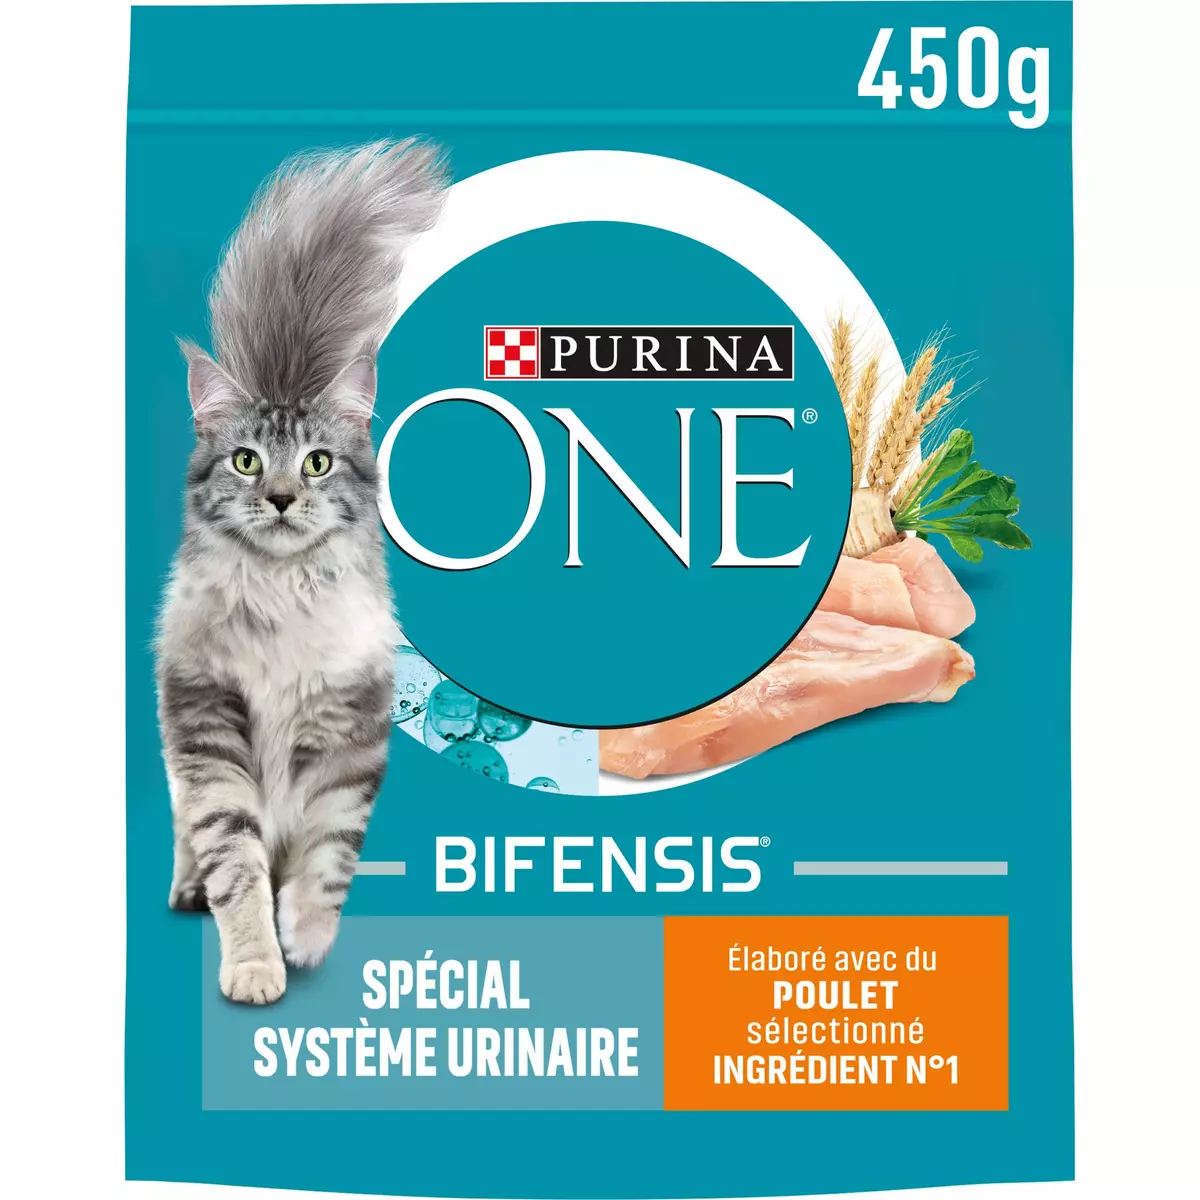 PURINA ONE Bifensis croquettes au poulet blé pour chat spéciale système urinaire 450g